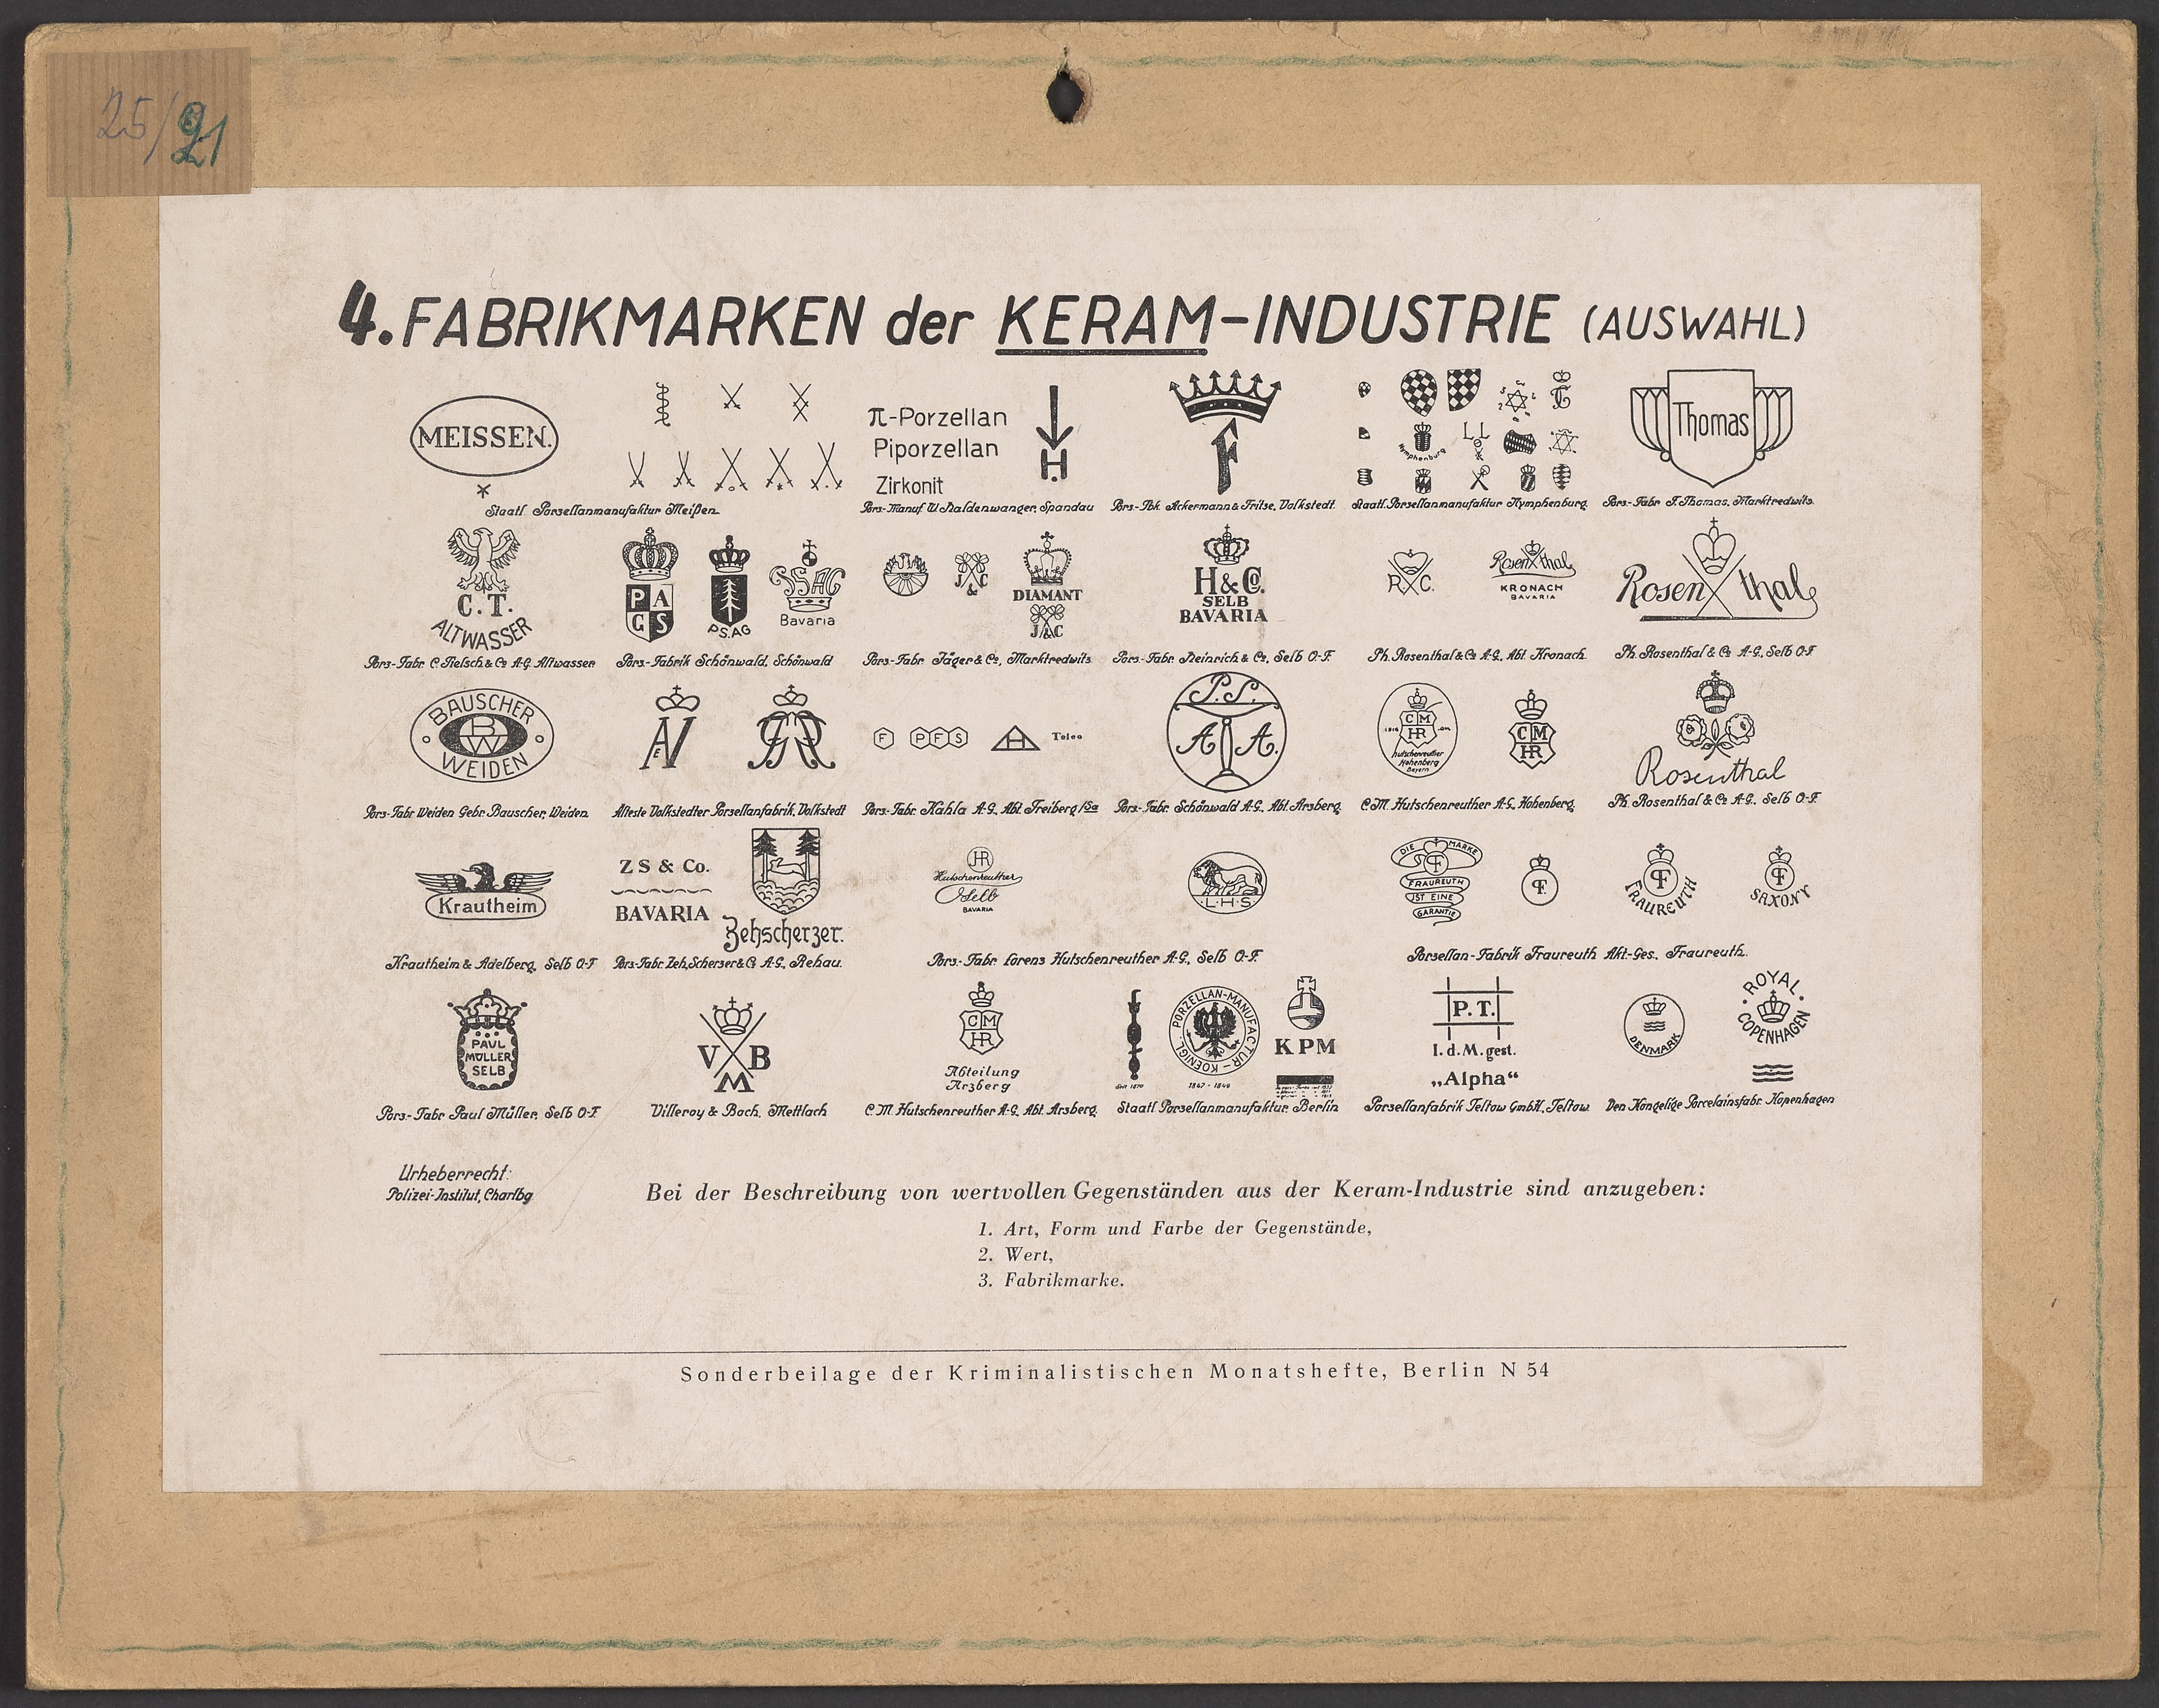 Lehrtafel "Auswahl-Fabrikmarken der Keram-Industrie" (Polizeidirektion Dresden RR-F)